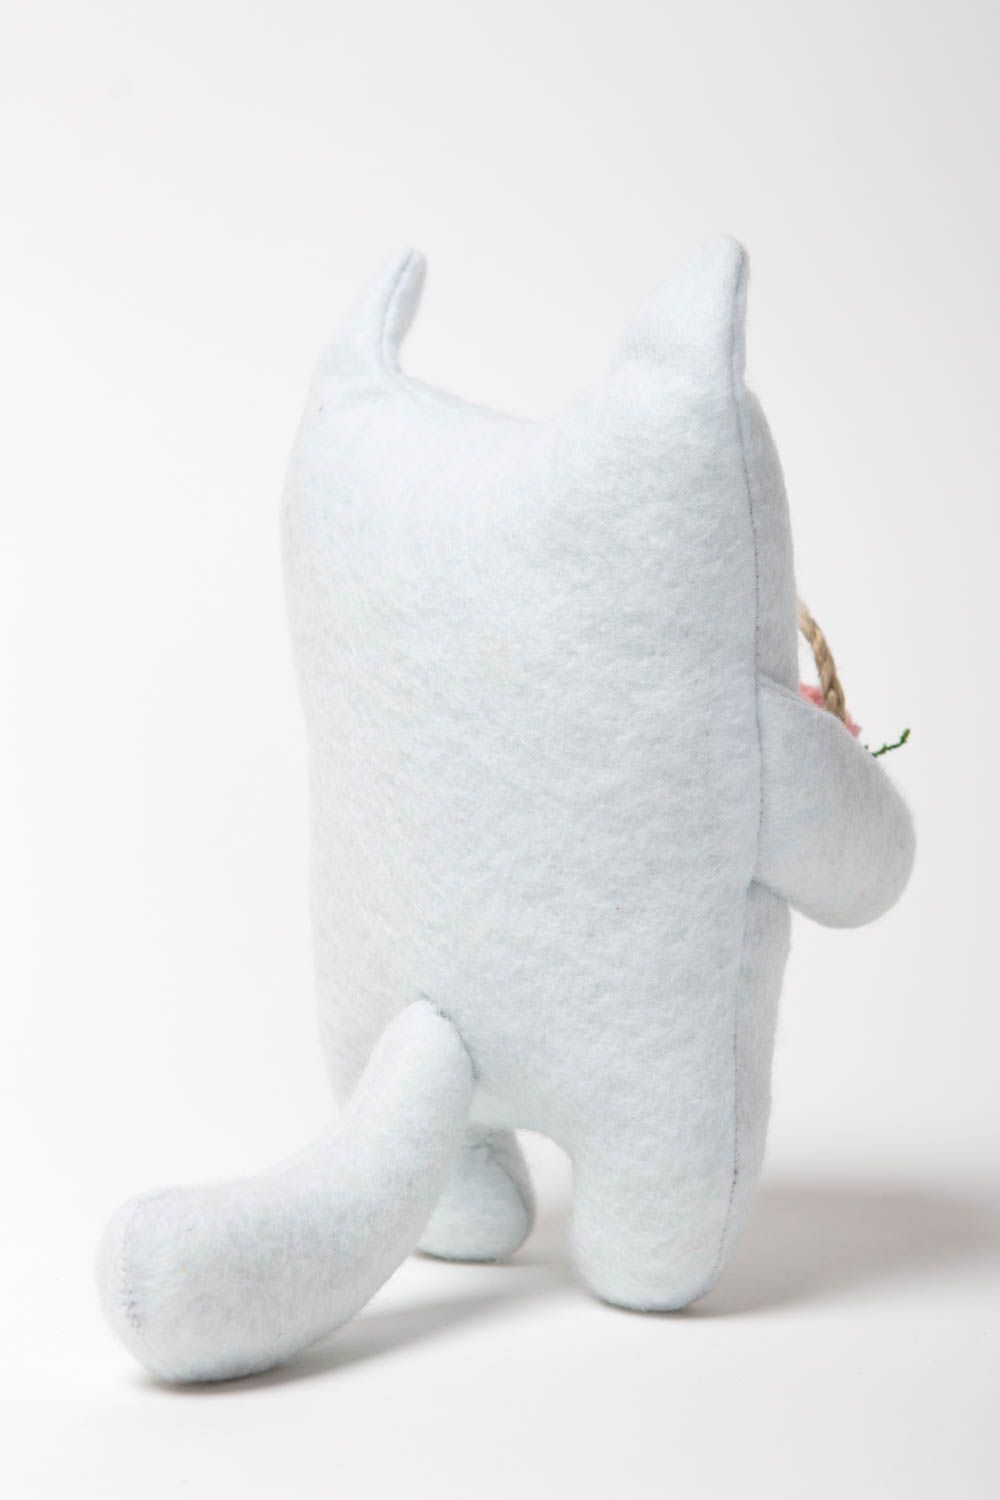 Игрушка кот белая игрушка ручной работы авторская игрушка с корзинкой интересная фото 4